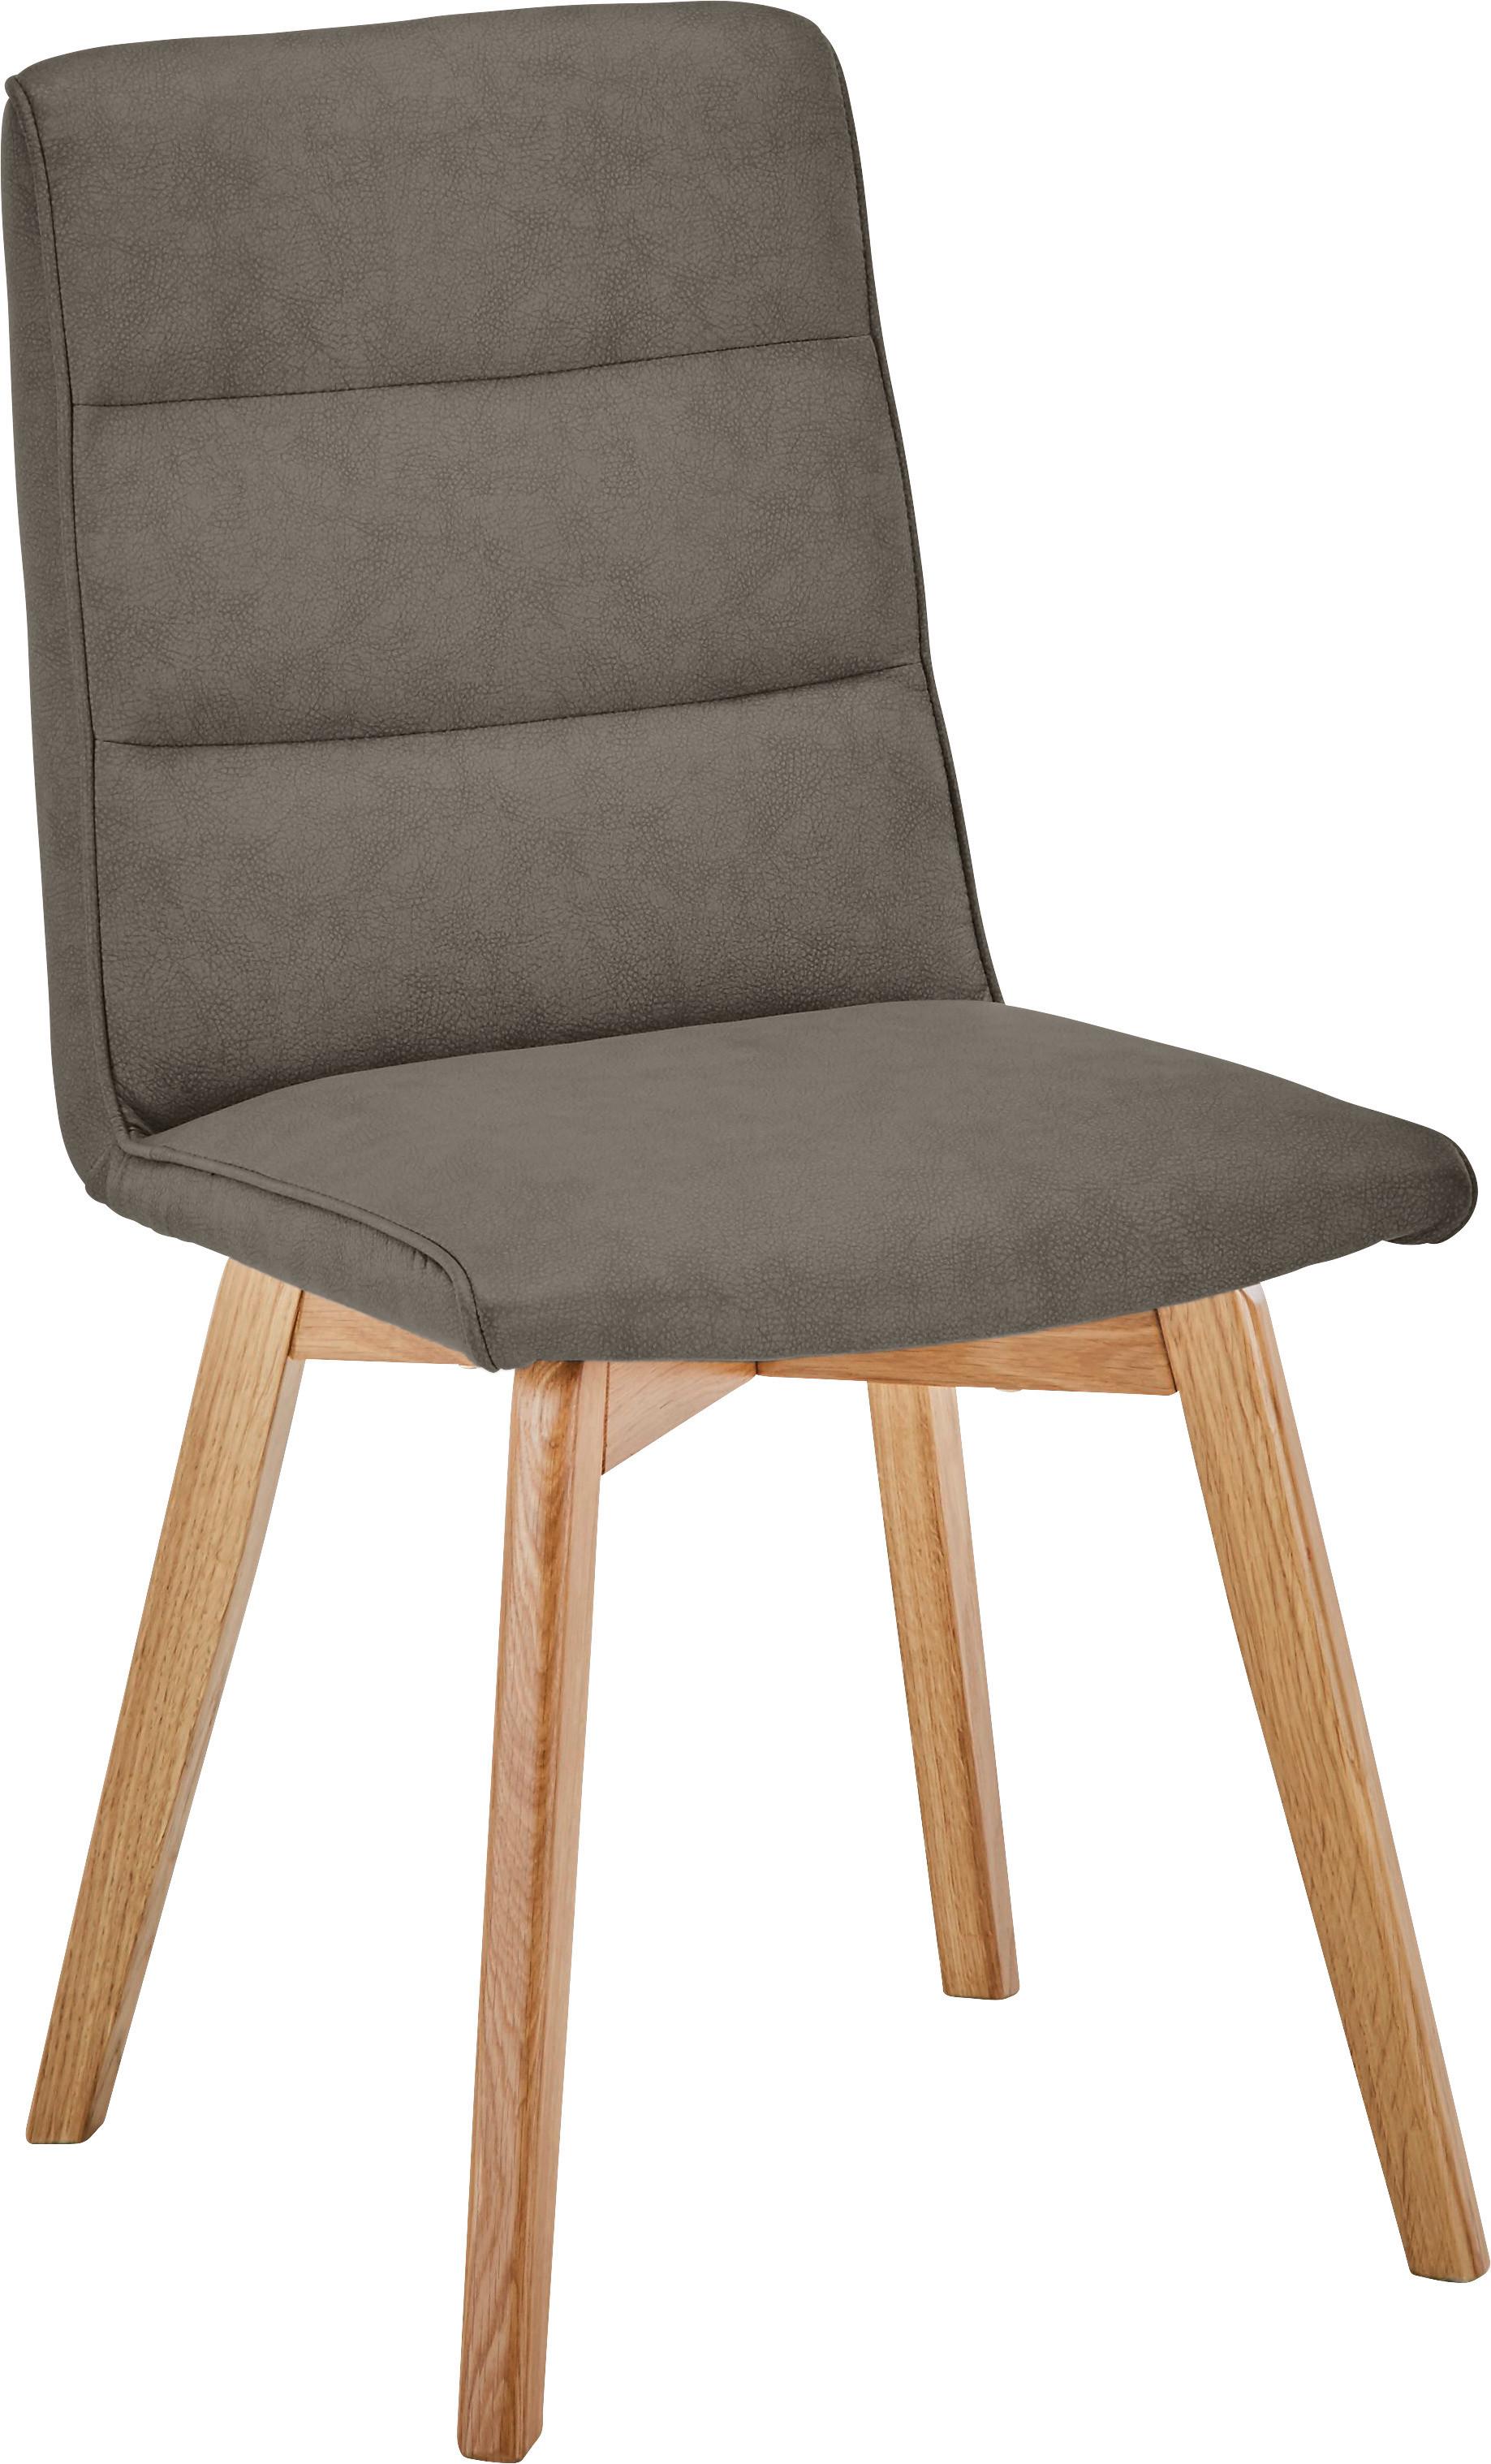 Židle Ellie -Top- - barvy dubu/hnědá, Moderní, dřevo/textil (44/87/55,5cm) - Zandiara